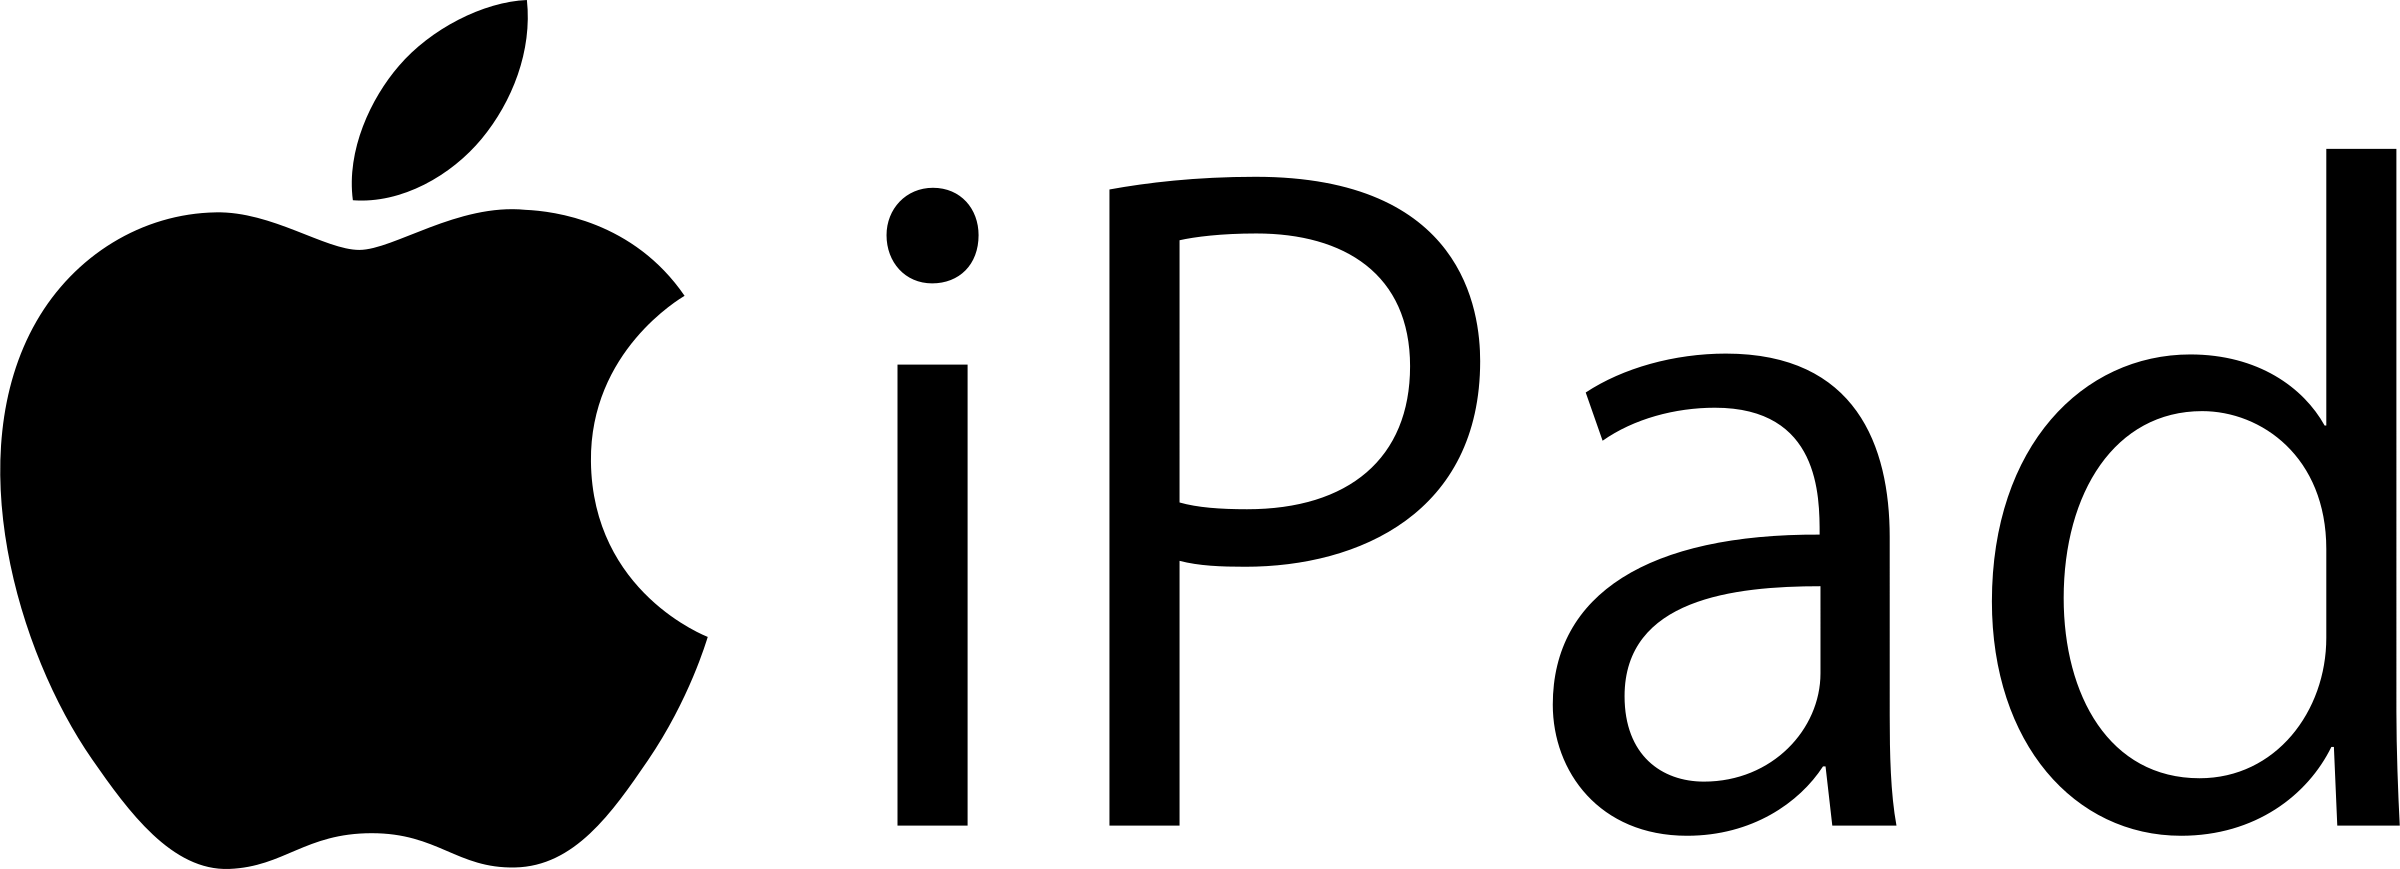 Black Apple Logo PNG Background